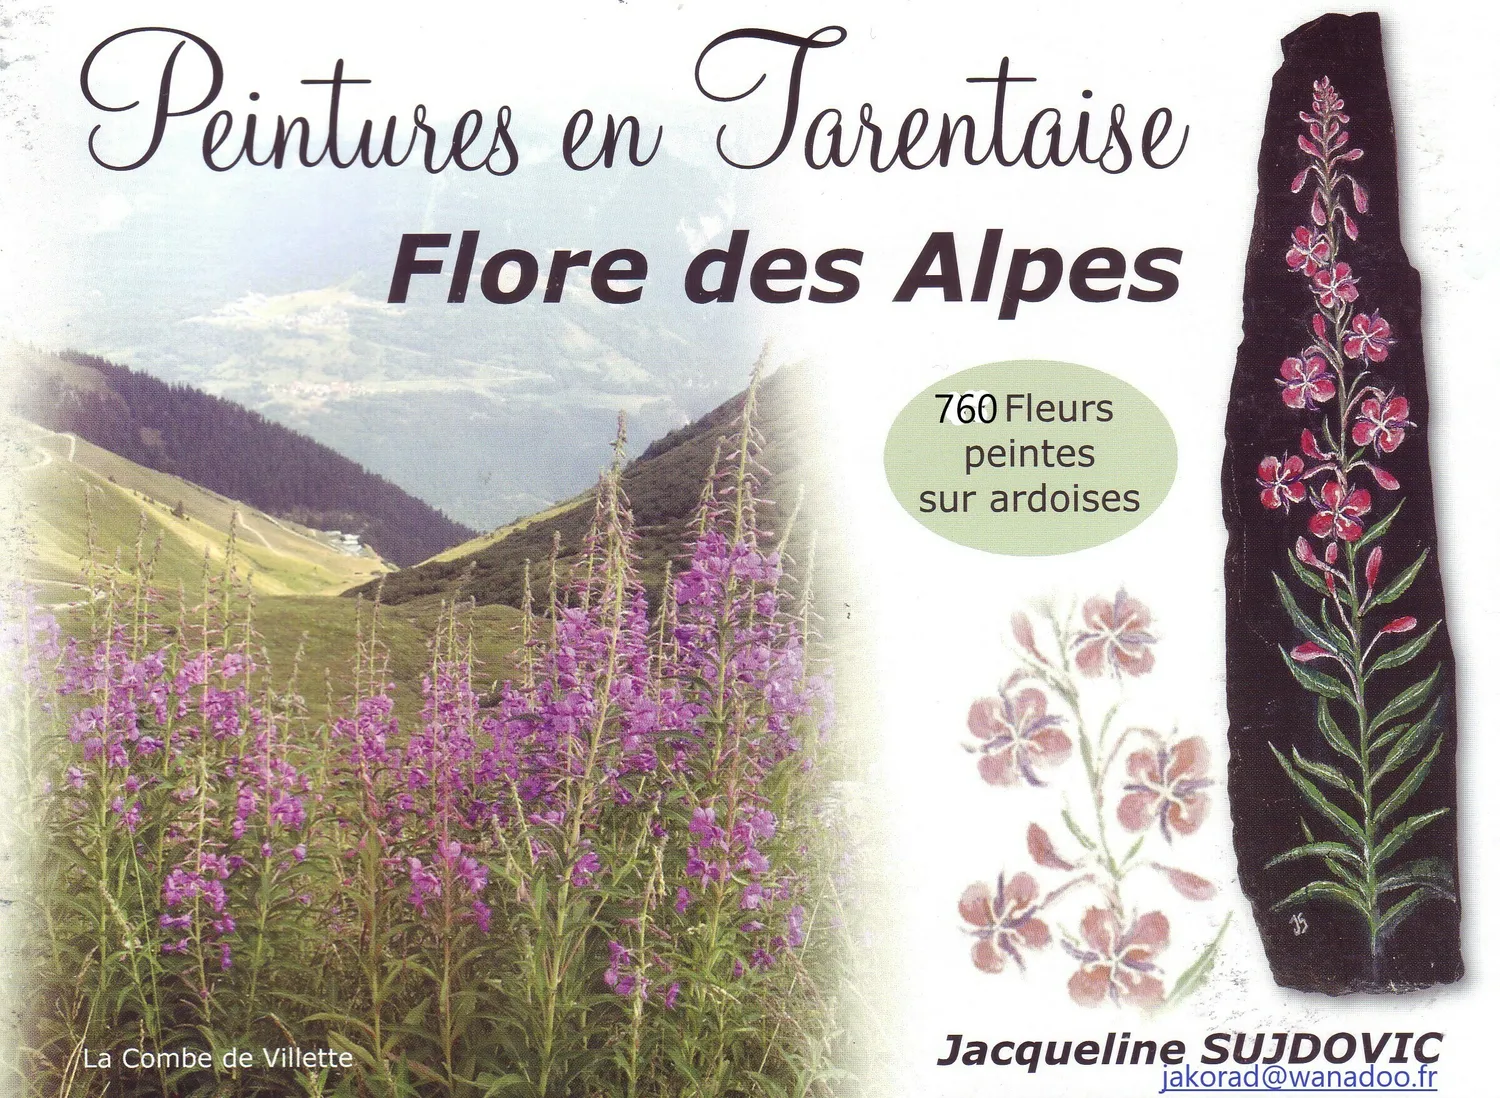 Image qui illustre: Exposition fleurs des Alpes peintes sur ardoises à Aime-la-Plagne - 0